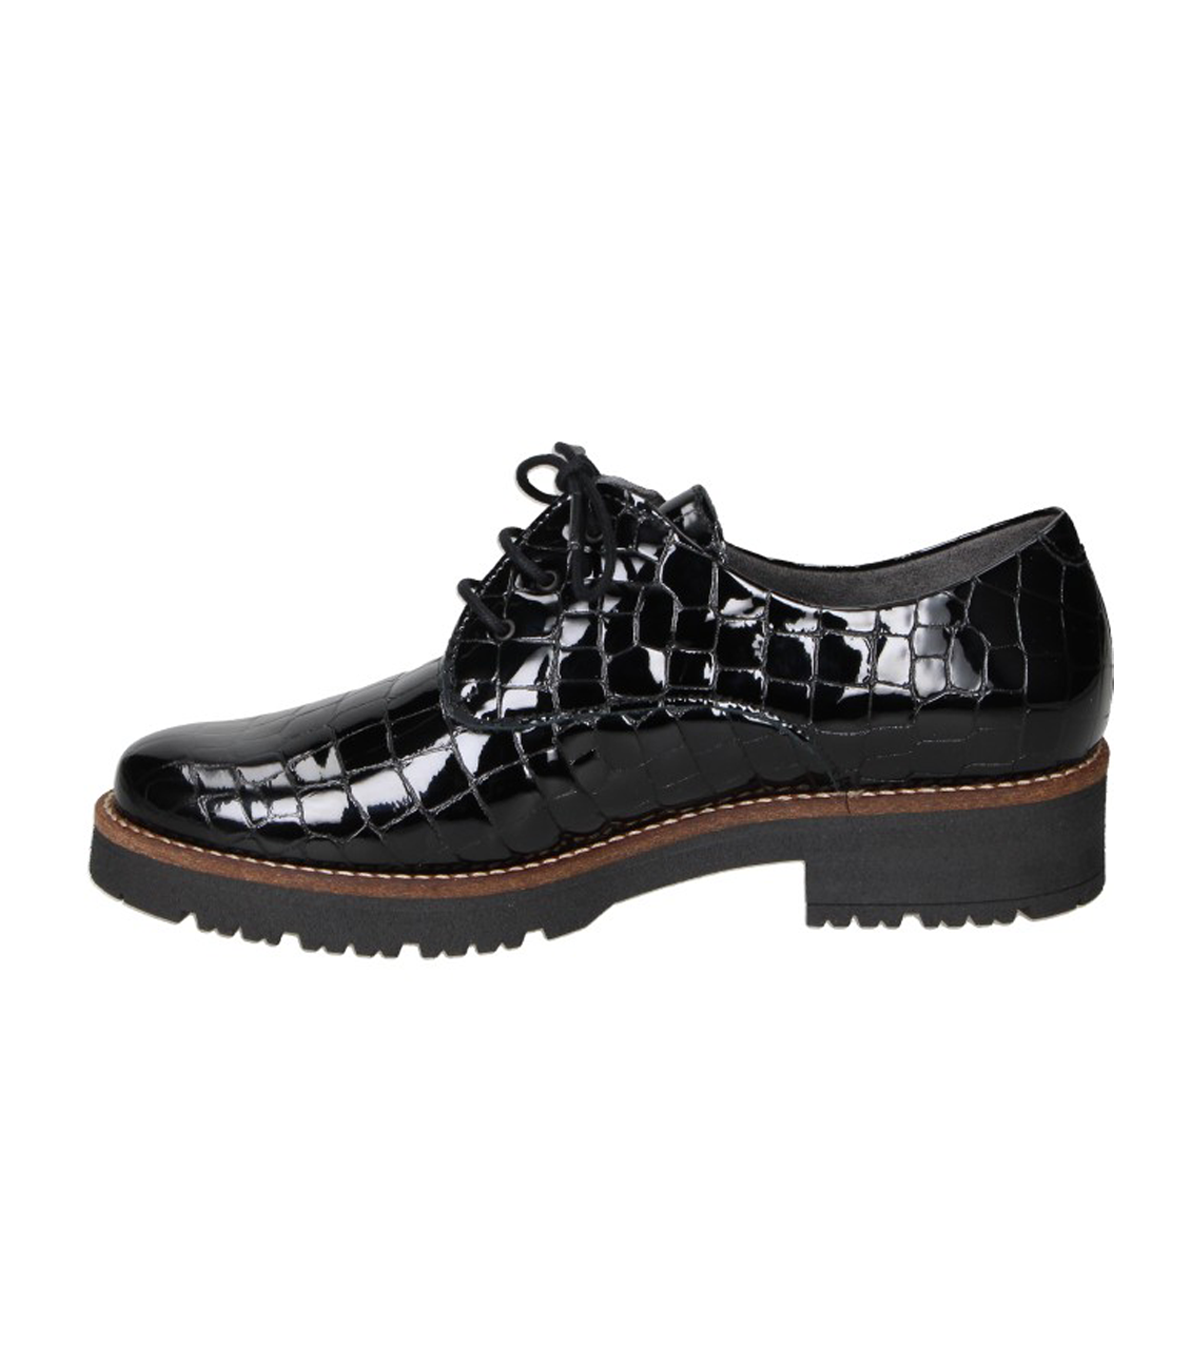 Zapatos mocasines negros PITILLOS 5392 de mujer online en MEGACALZADO